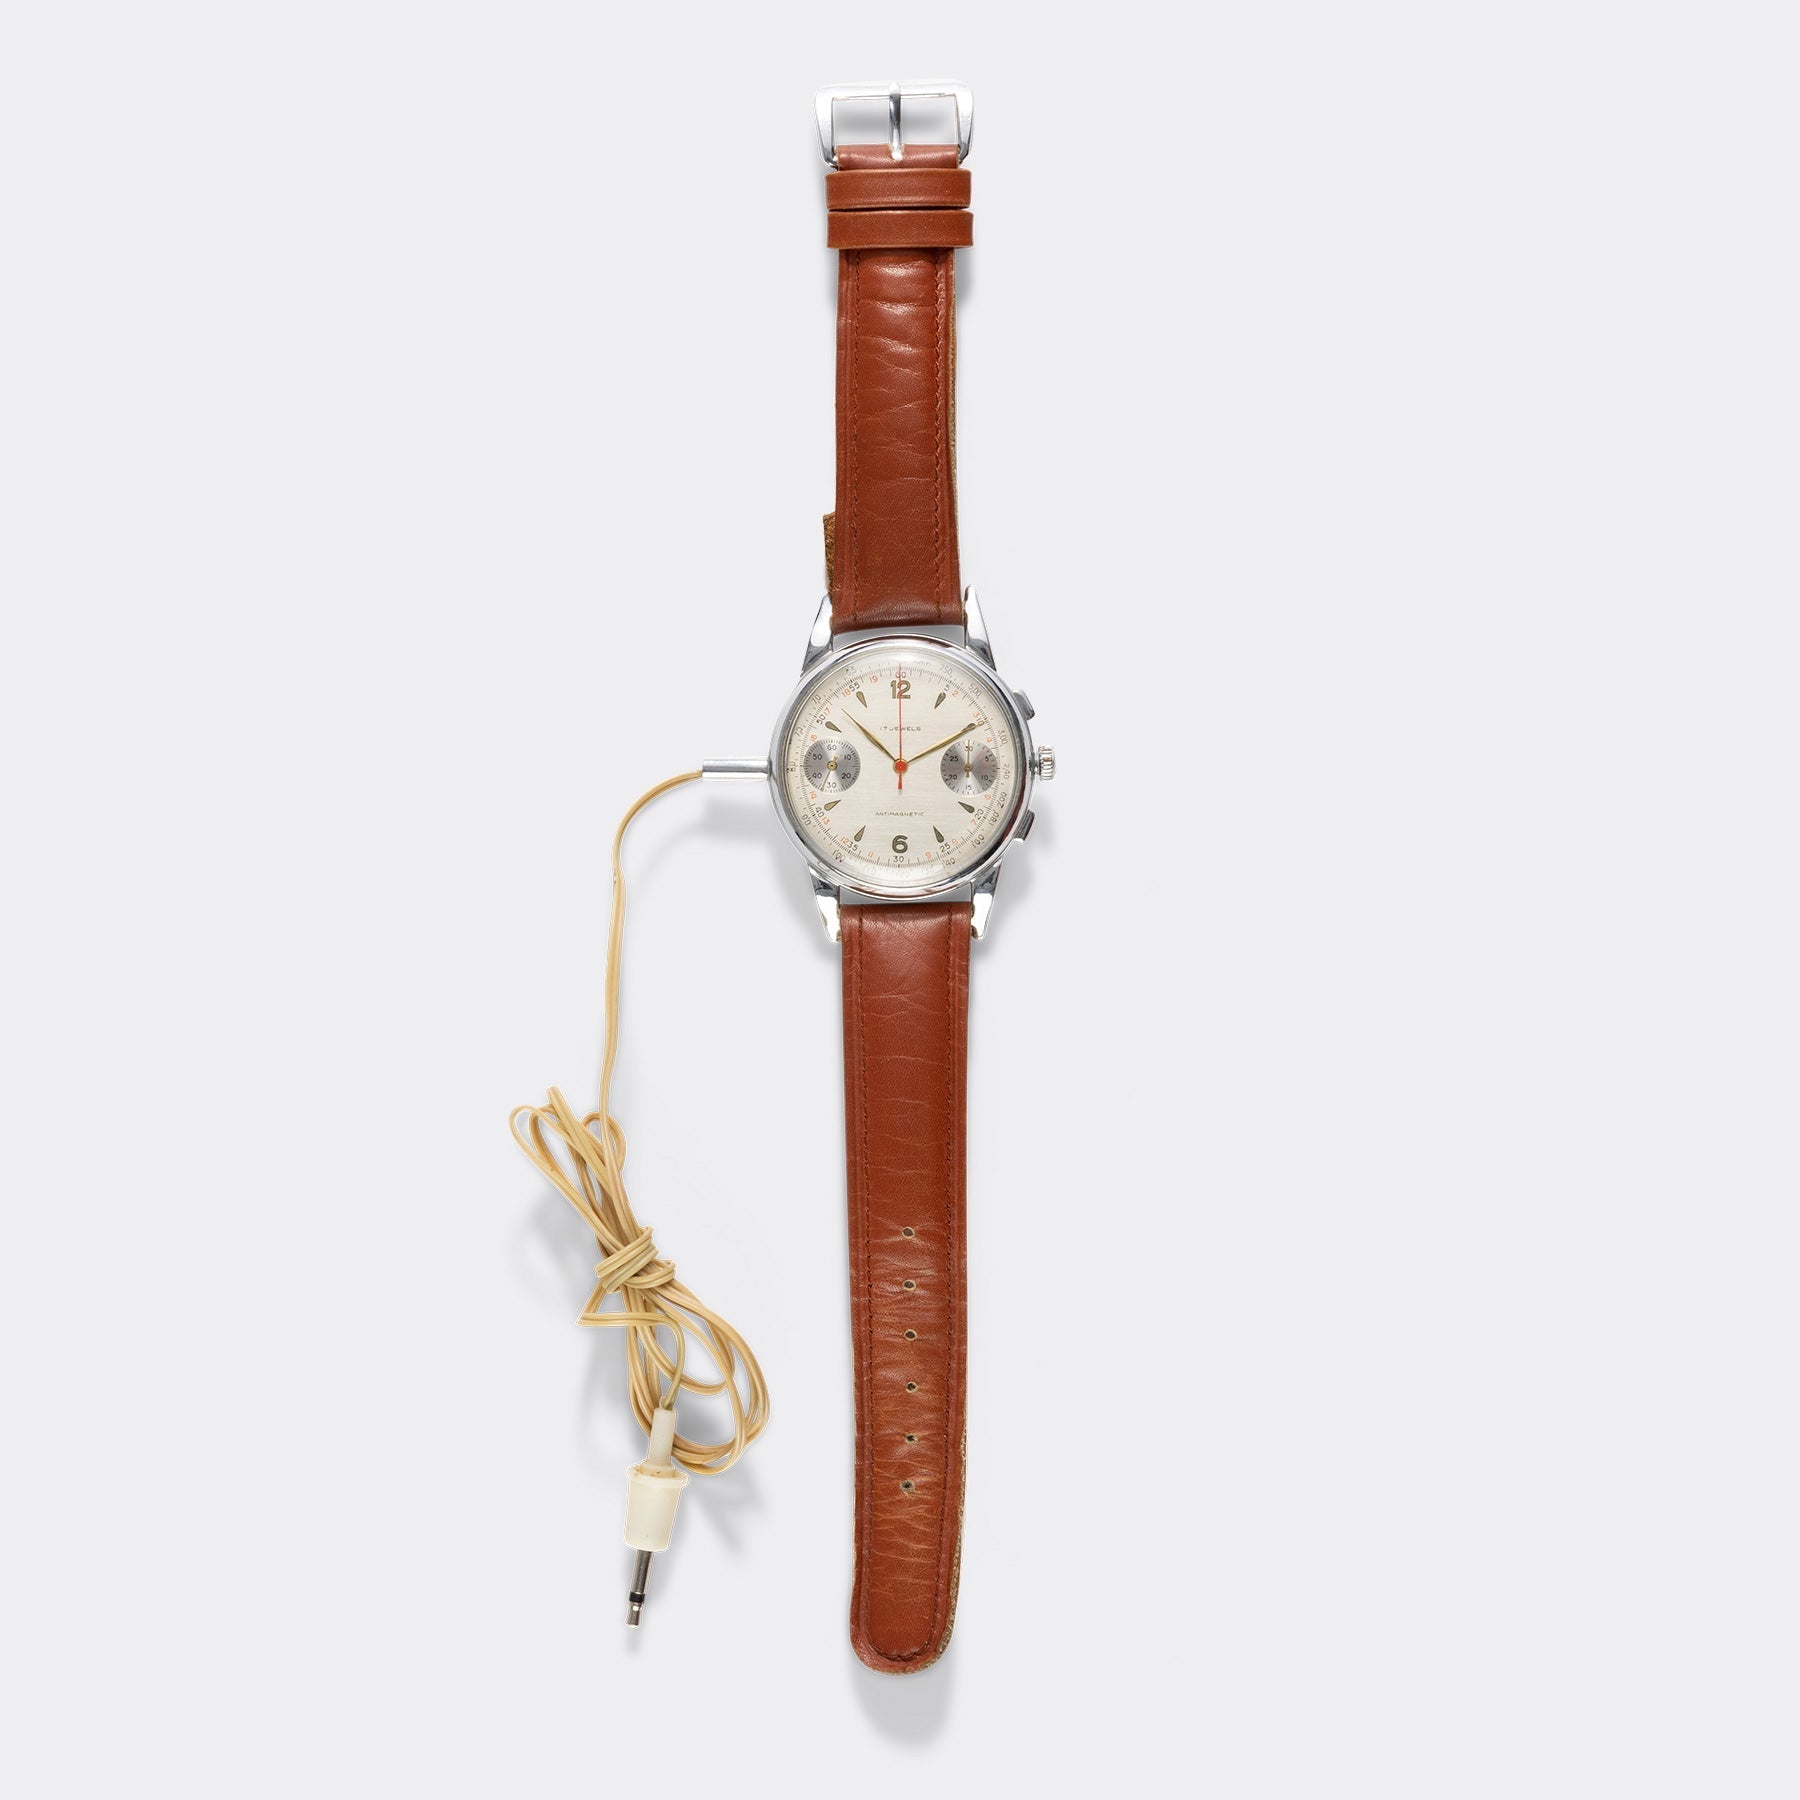 1960s Protona Minifon Wrist Watch Surveillance Set